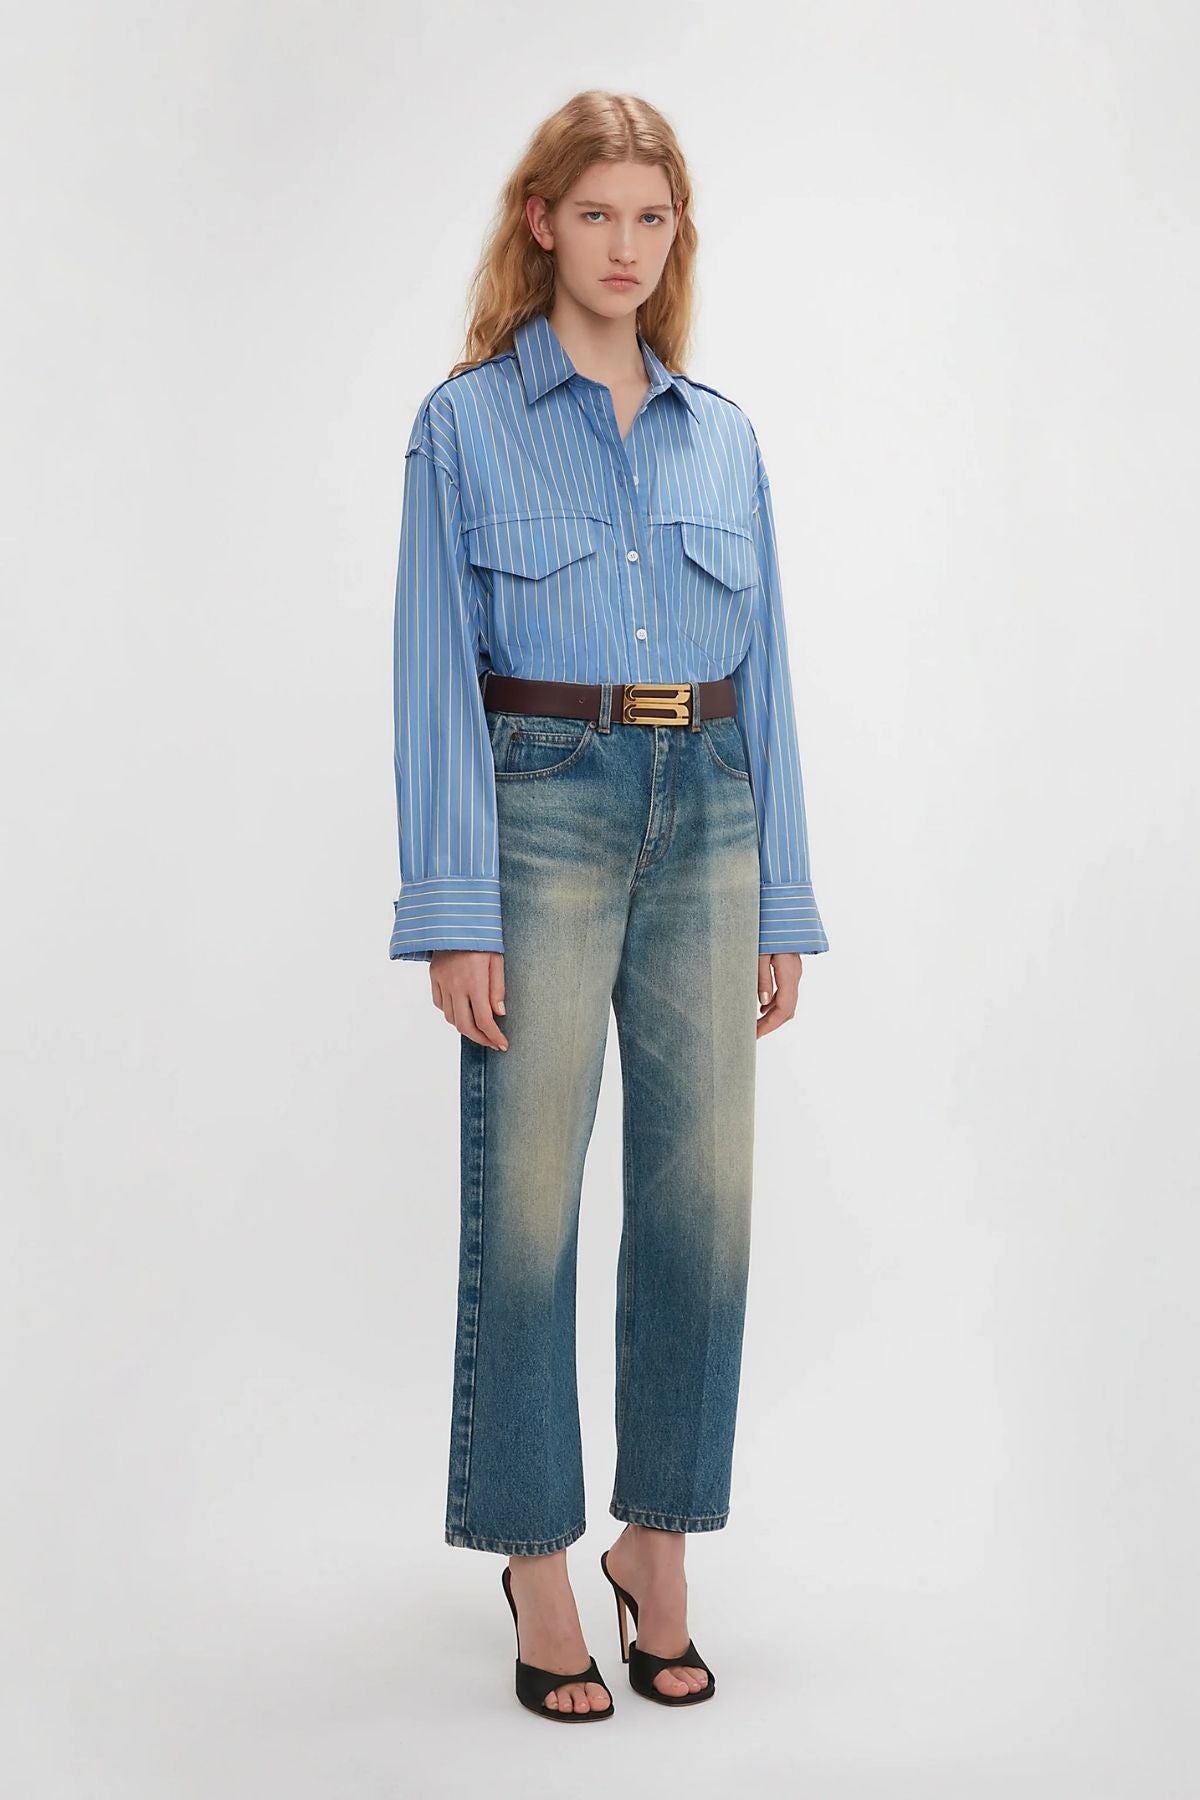 Victoria Beckham Cropped Seam Detail Shirt - Steel Blue